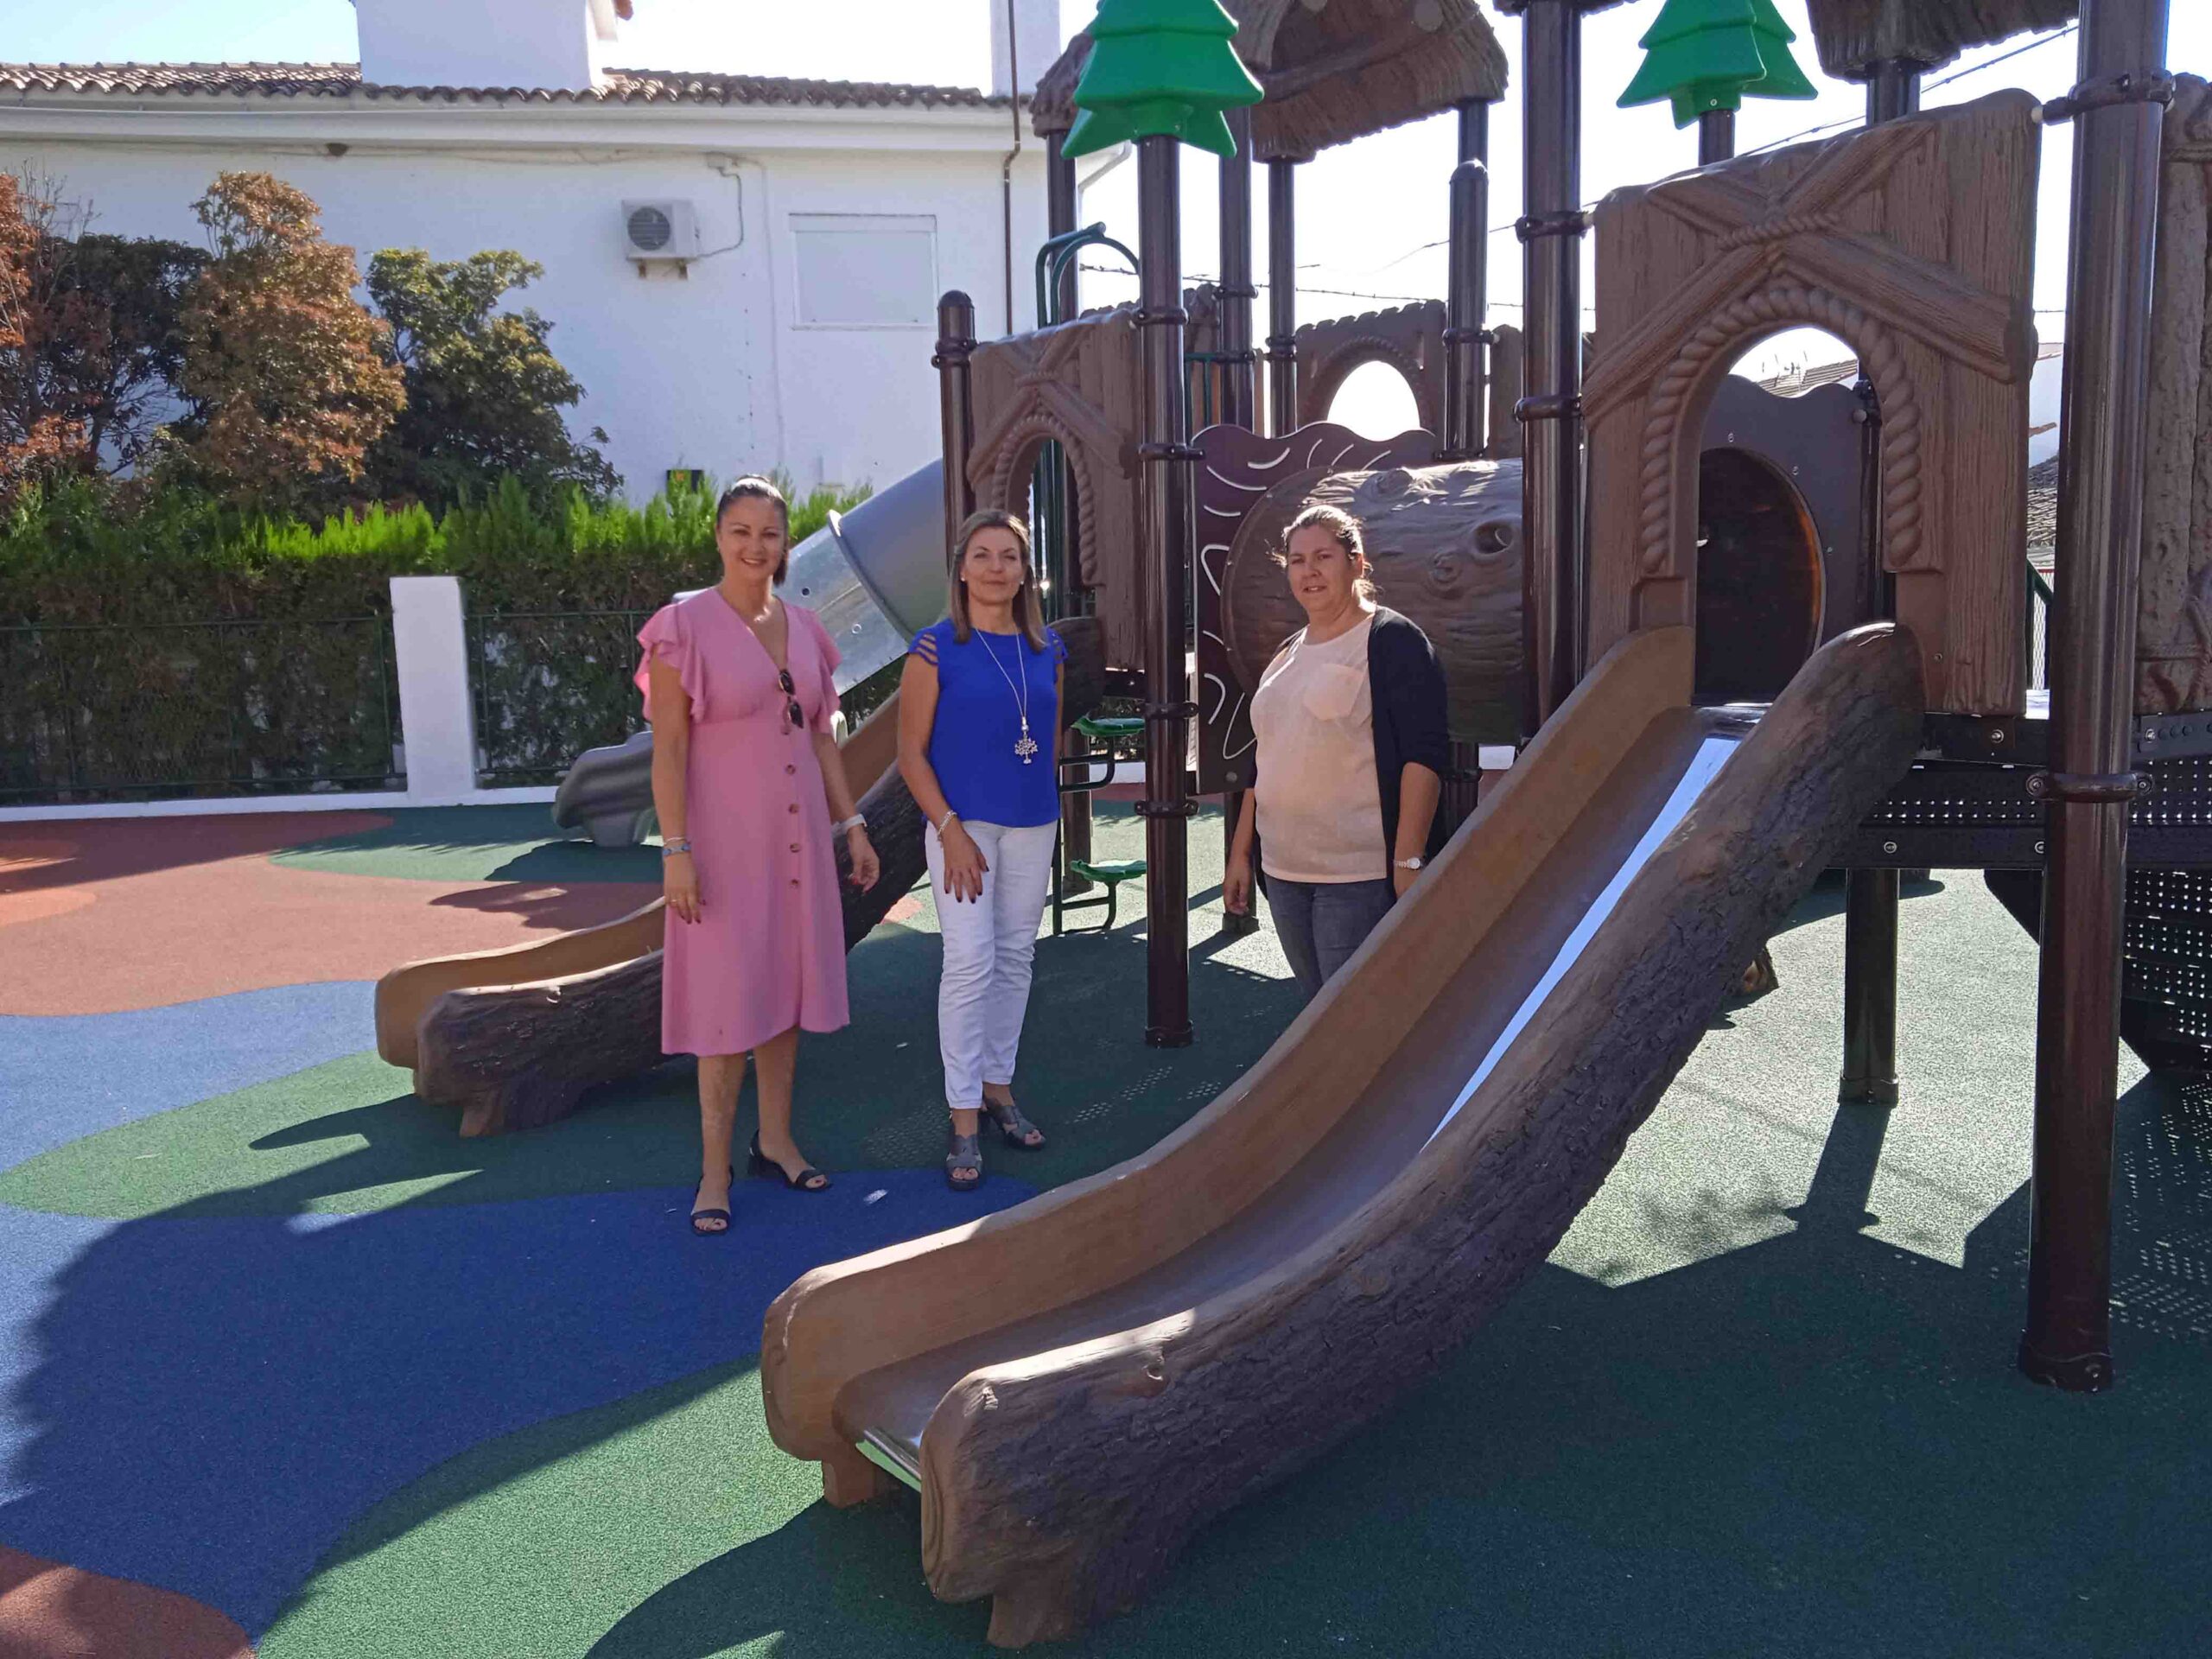 Mejora de Parques Infantiles en Fuente Obejuna: Un Impulso a la Diversión y la Seguridad